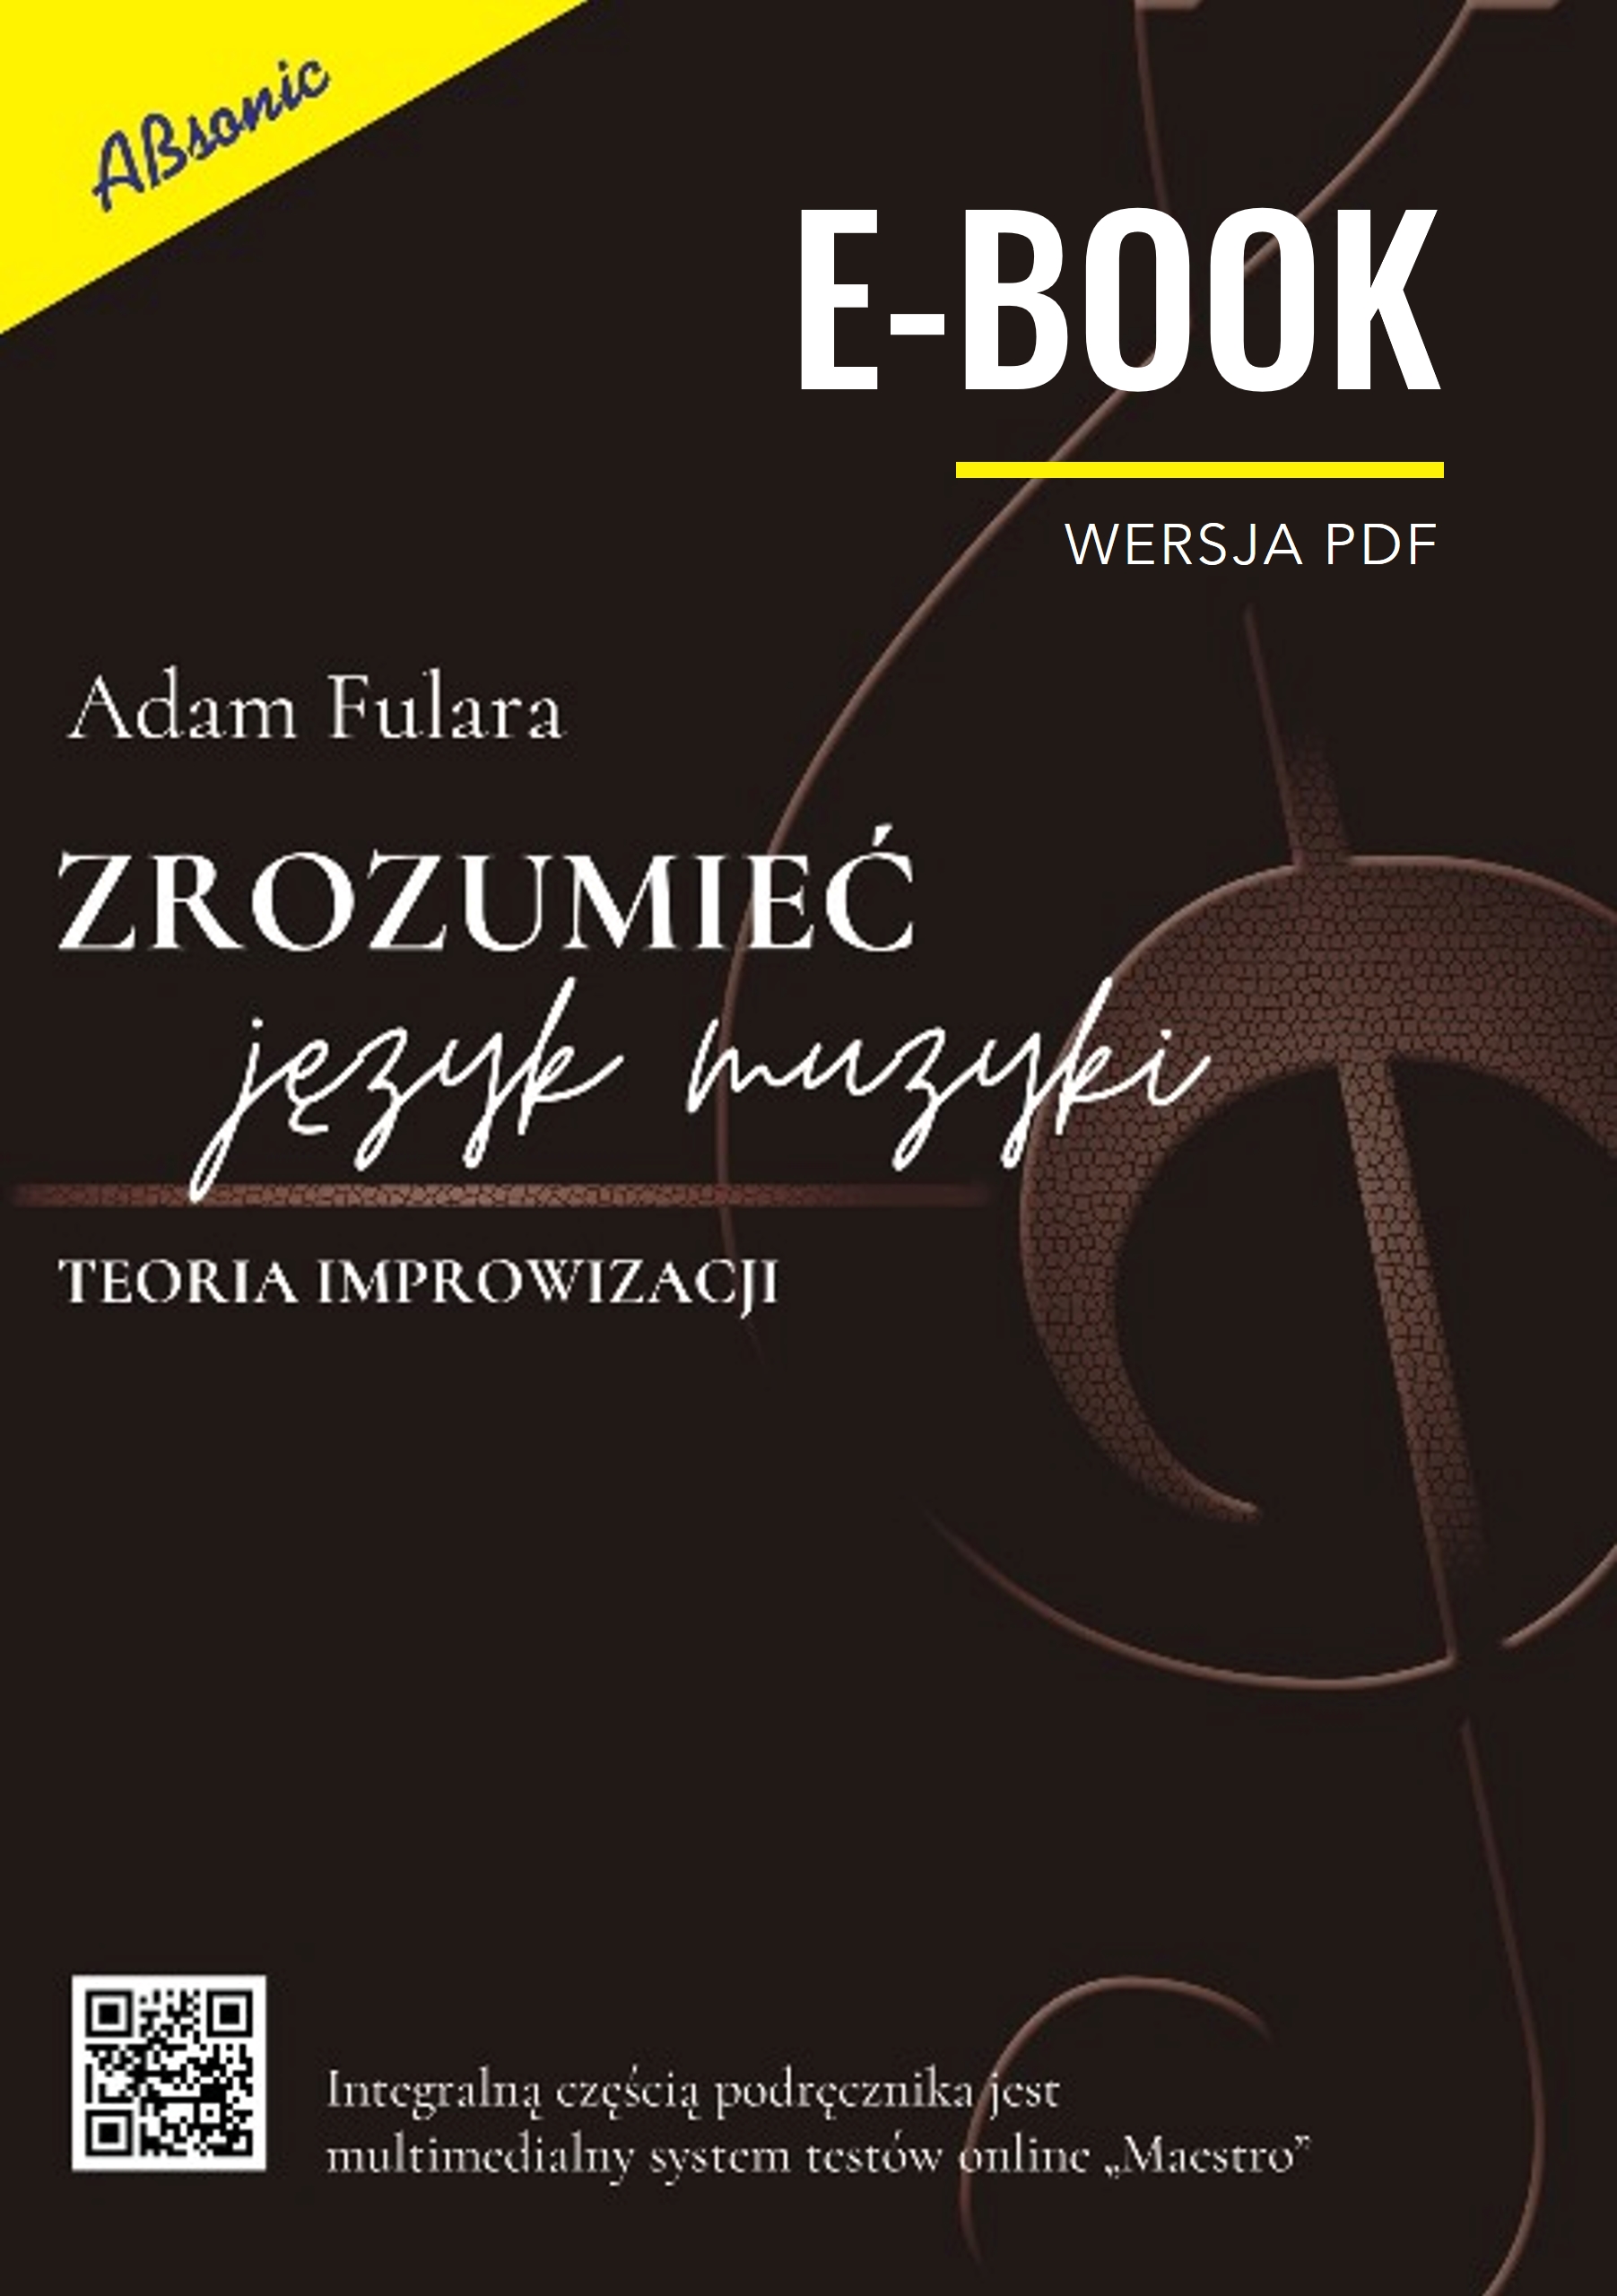 Premiera E-booka "Zrozumieć język muzyki"